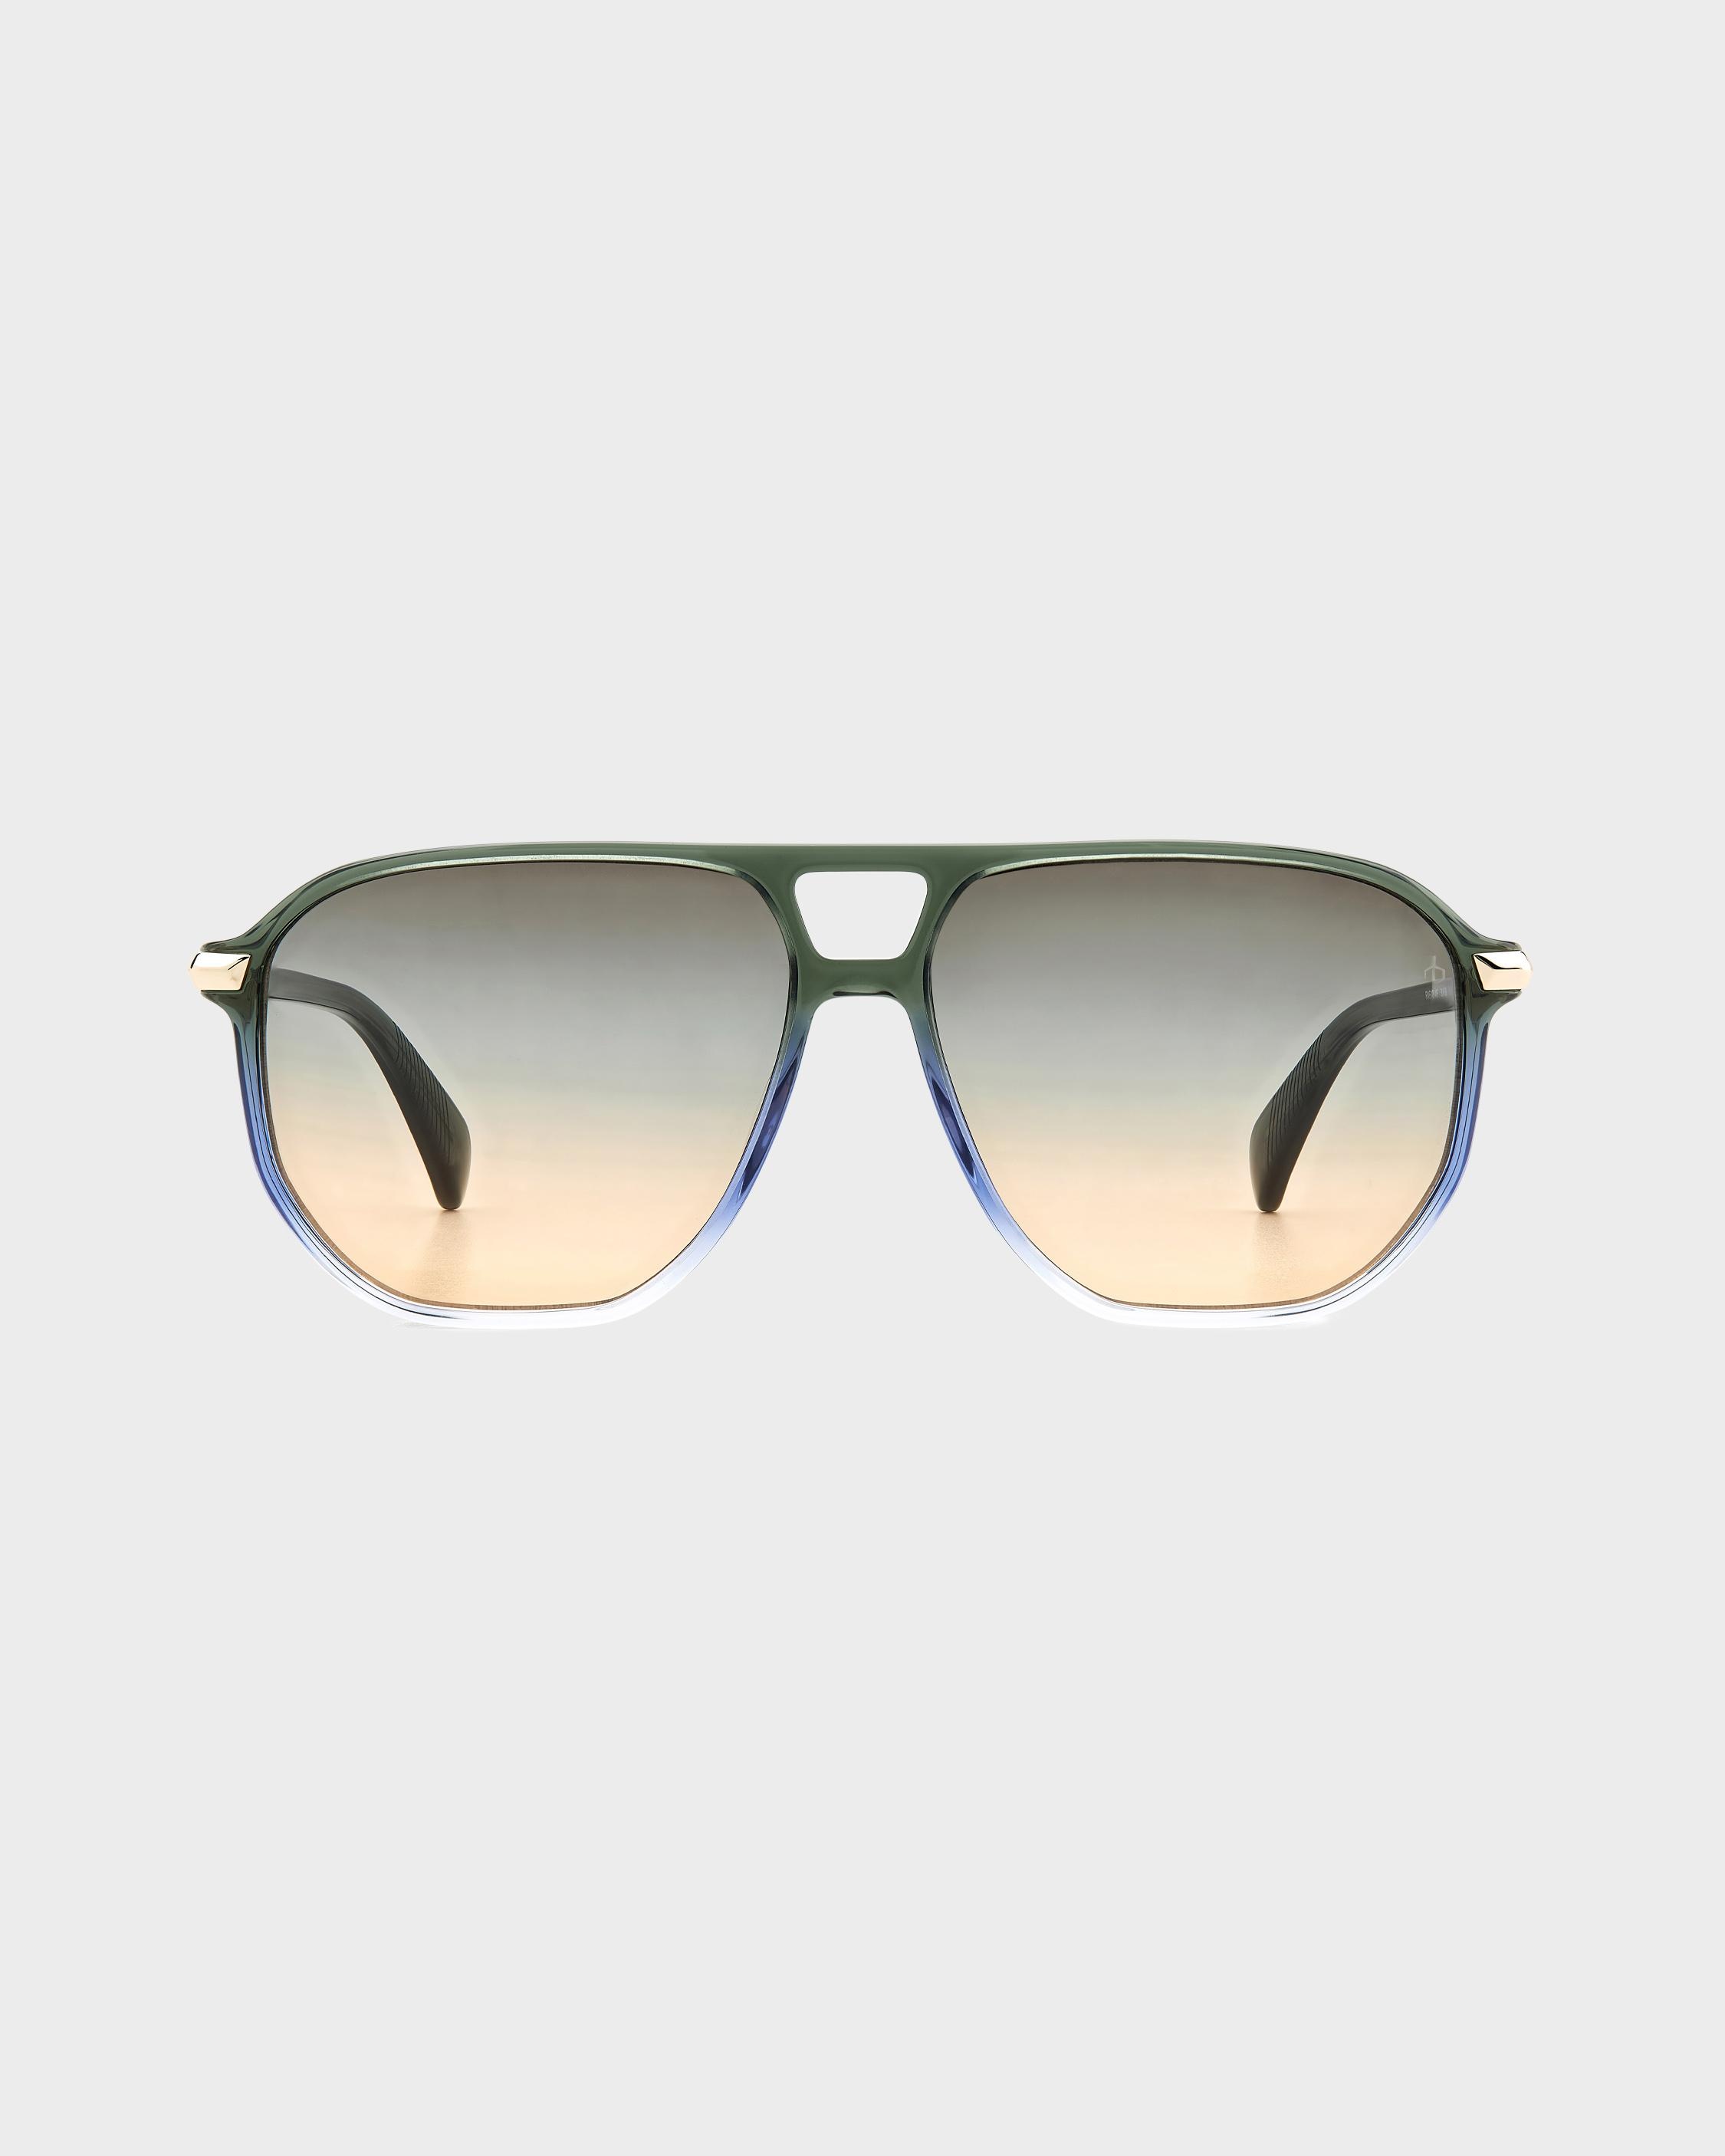 Maeve
Navigator Sunglasses - 2